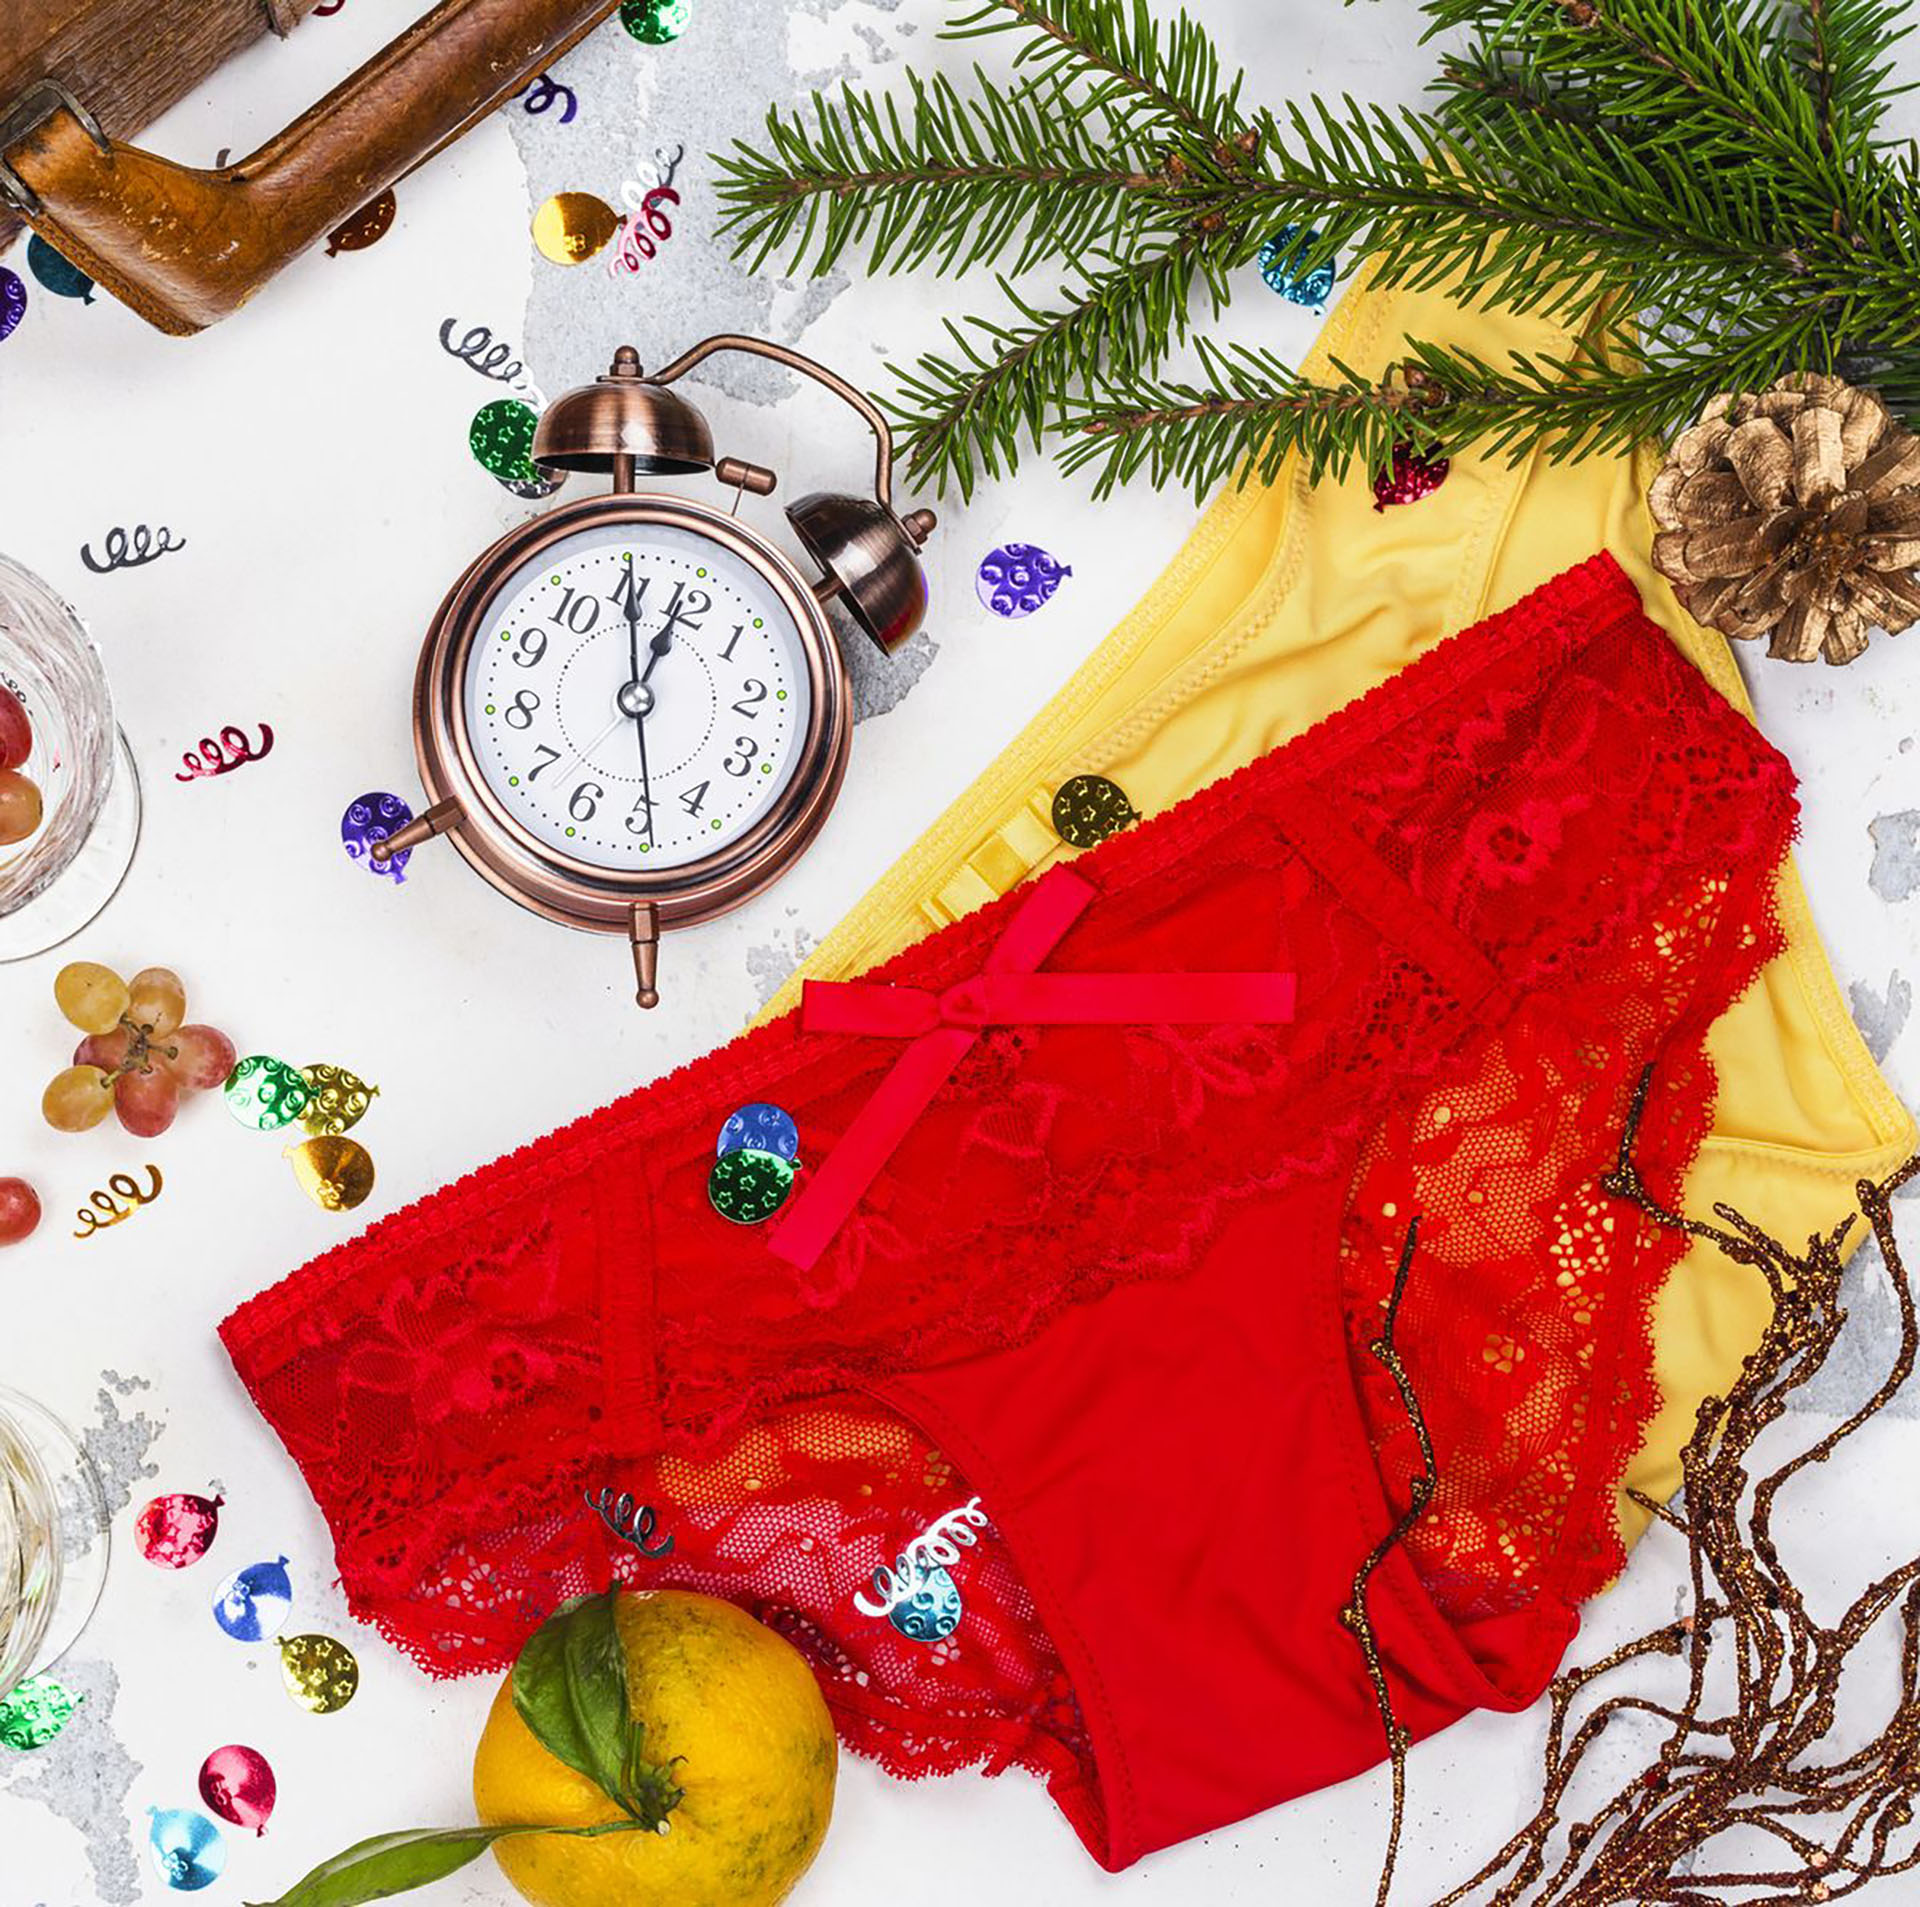 Usar ropa interior de color roja en año nuevo es sinónimo de buen augurio